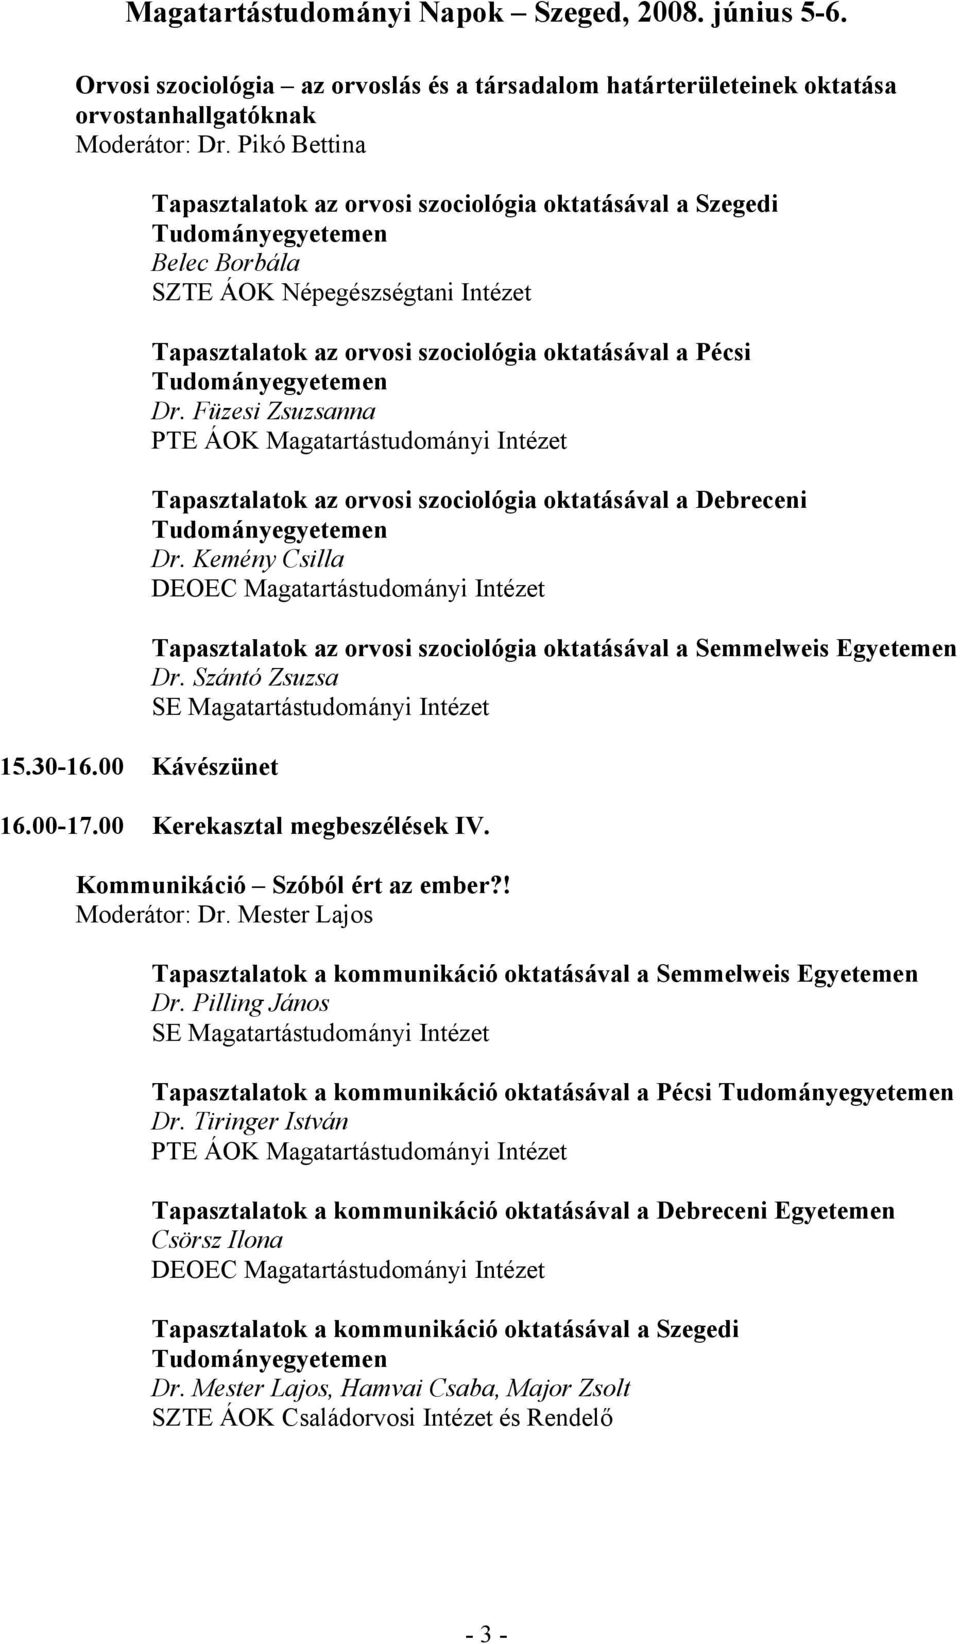 Füzesi Zsuzsanna Tapasztalatok az orvosi szociológia oktatásával a Debreceni Dr. Kemény Csilla Tapasztalatok az orvosi szociológia oktatásával a Semmelweis Egyetemen Dr. Szántó Zsuzsa 16.00-17.